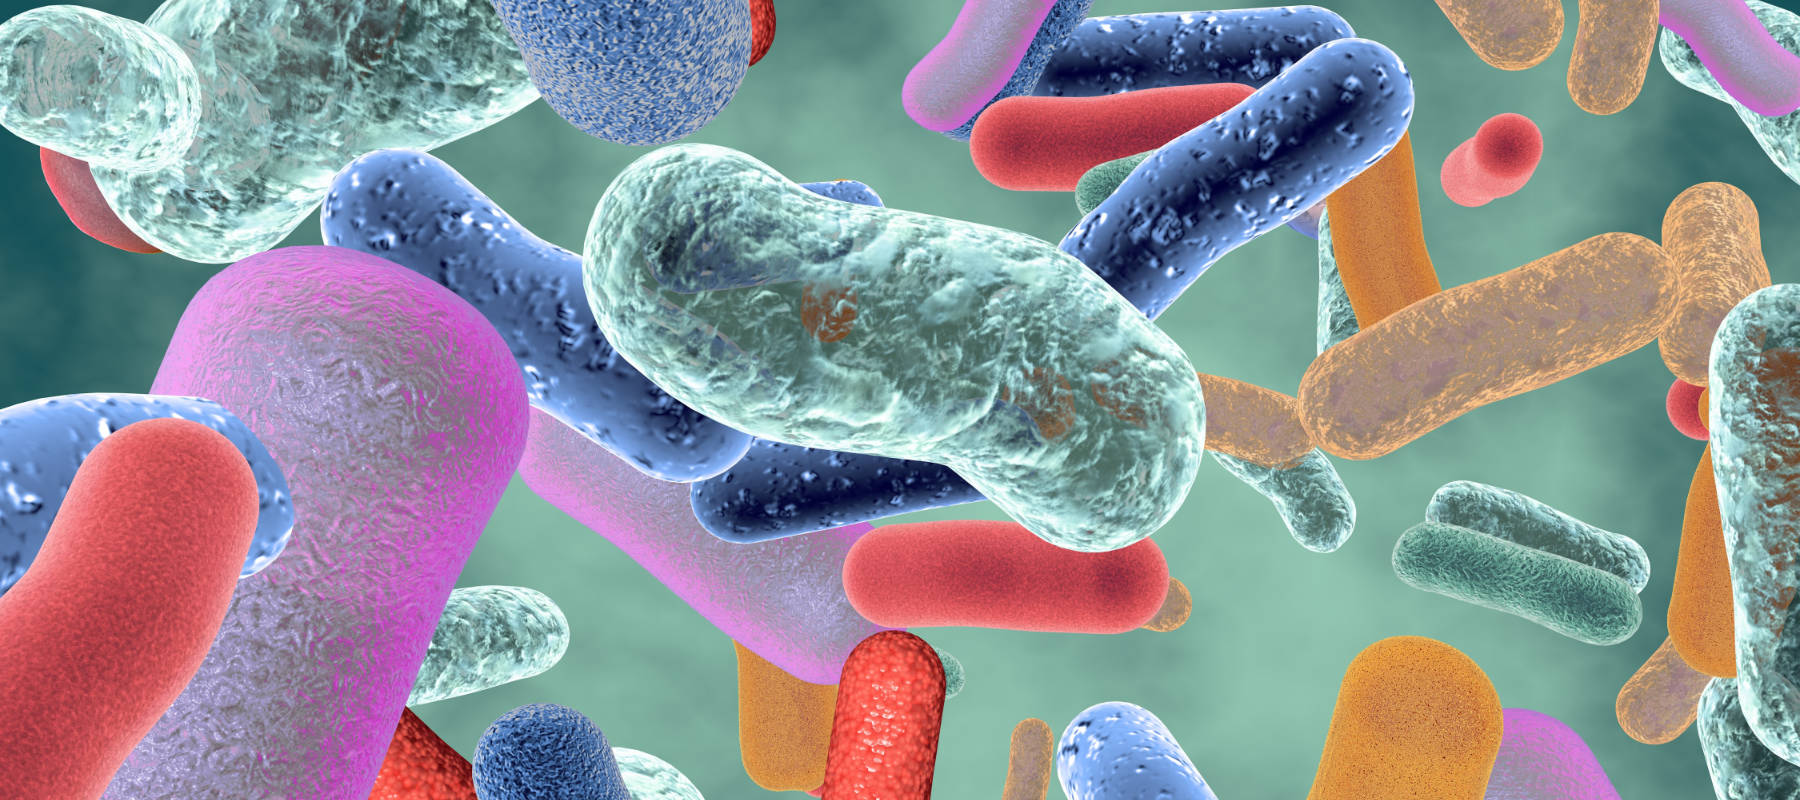 Il Microbiota: l’insieme dei microrganismi presenti nel nostro corpo